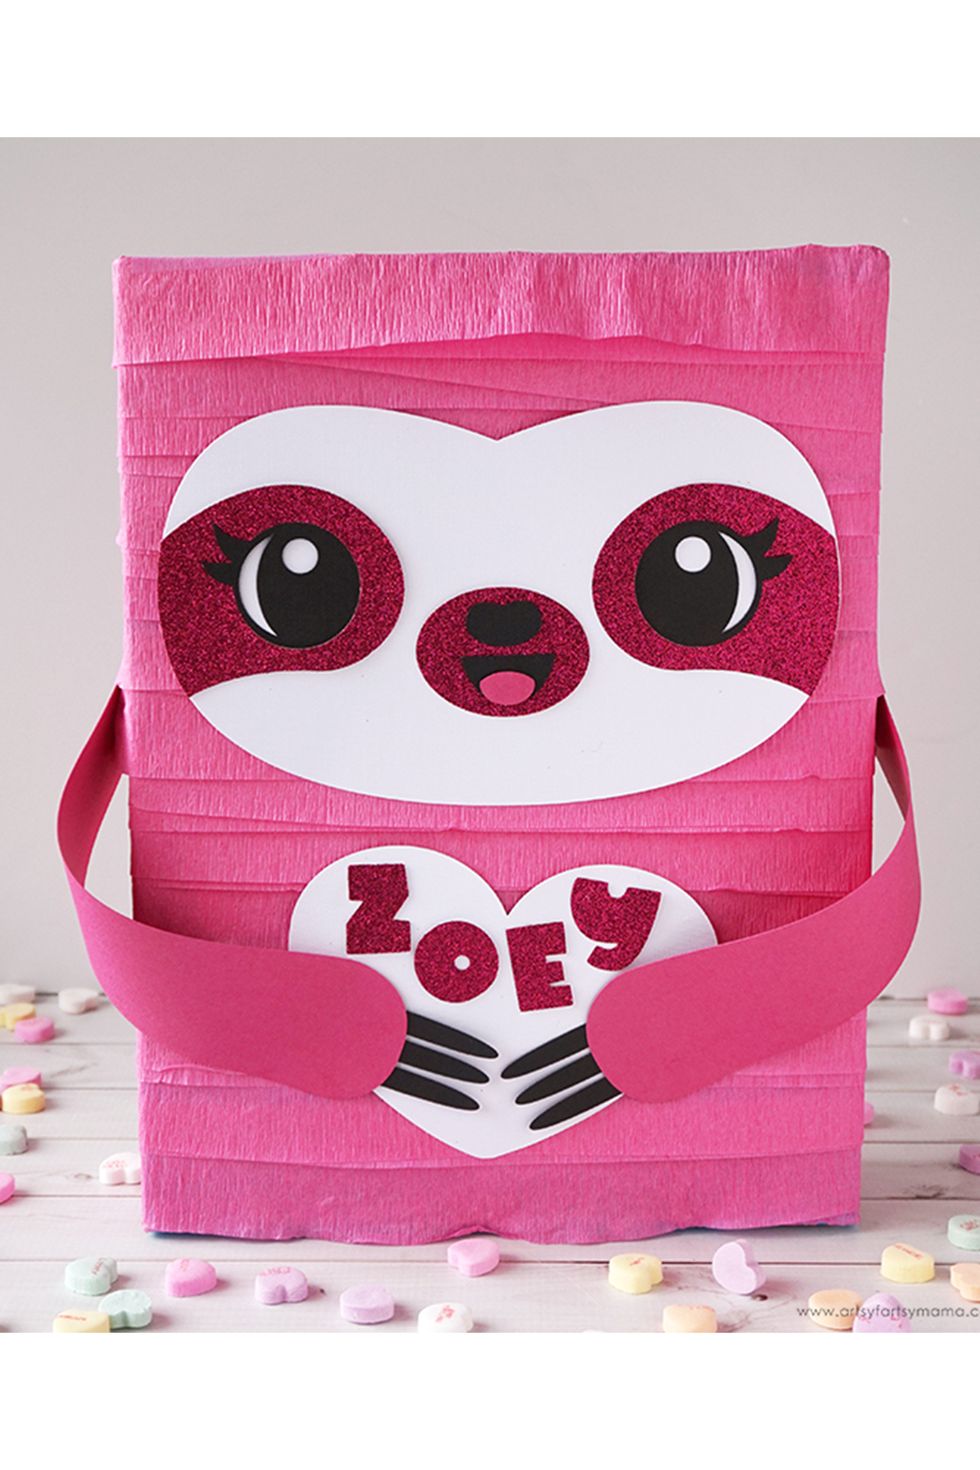 10+ Fun & Creative Valentine Boxes